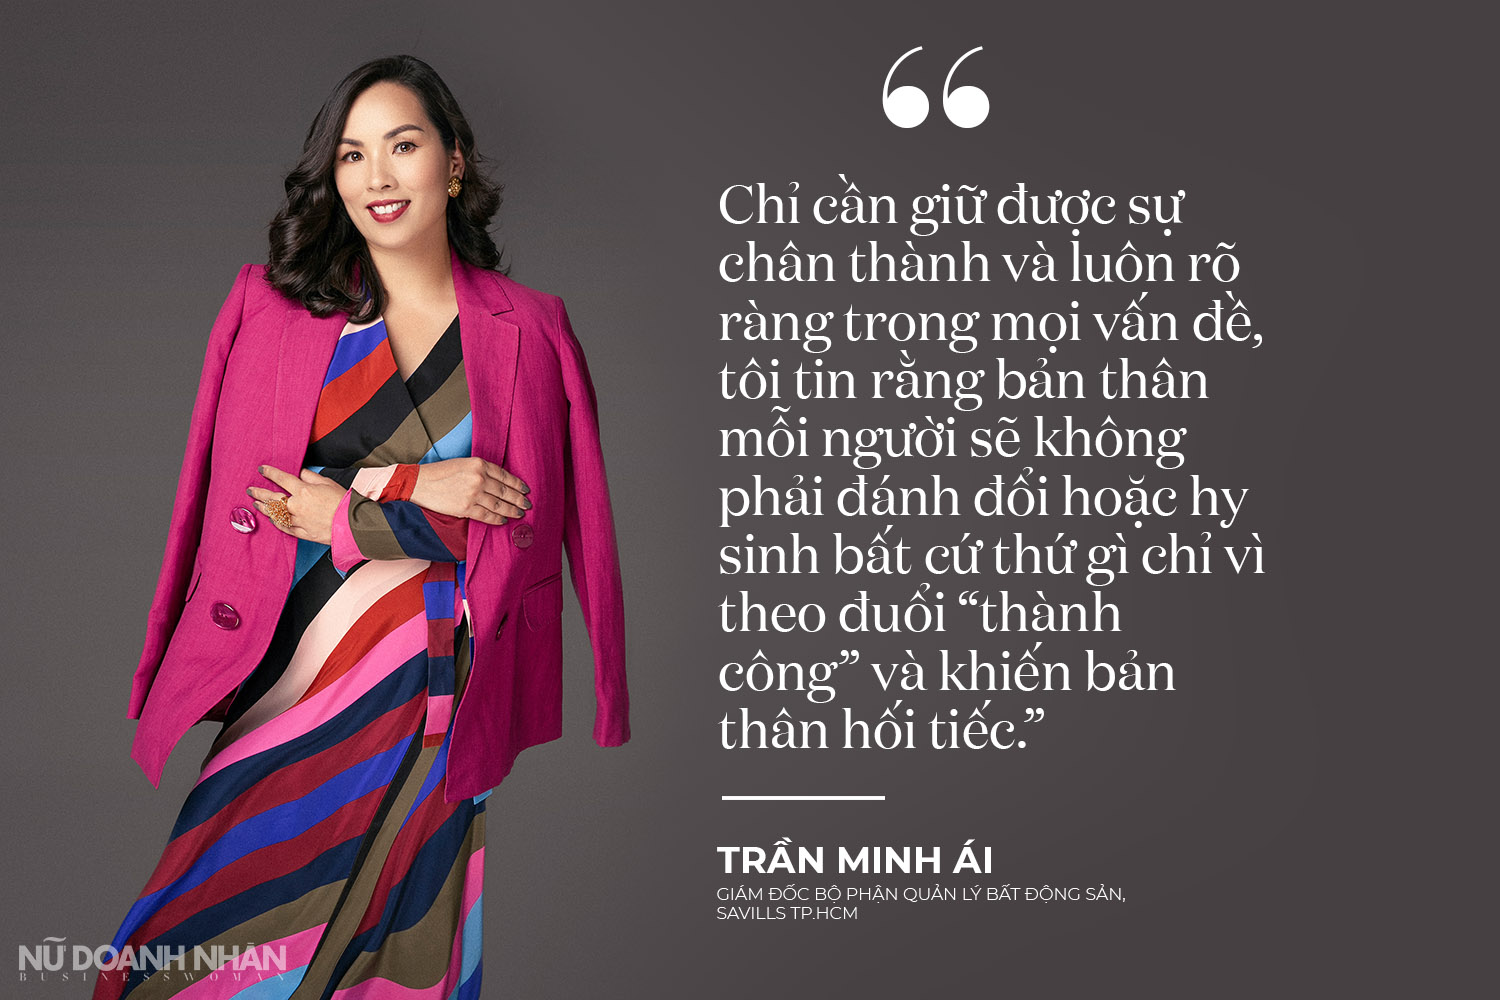 Phỏng vấn giám đốc Savills nữ doanh nhân Trần Minh Ái